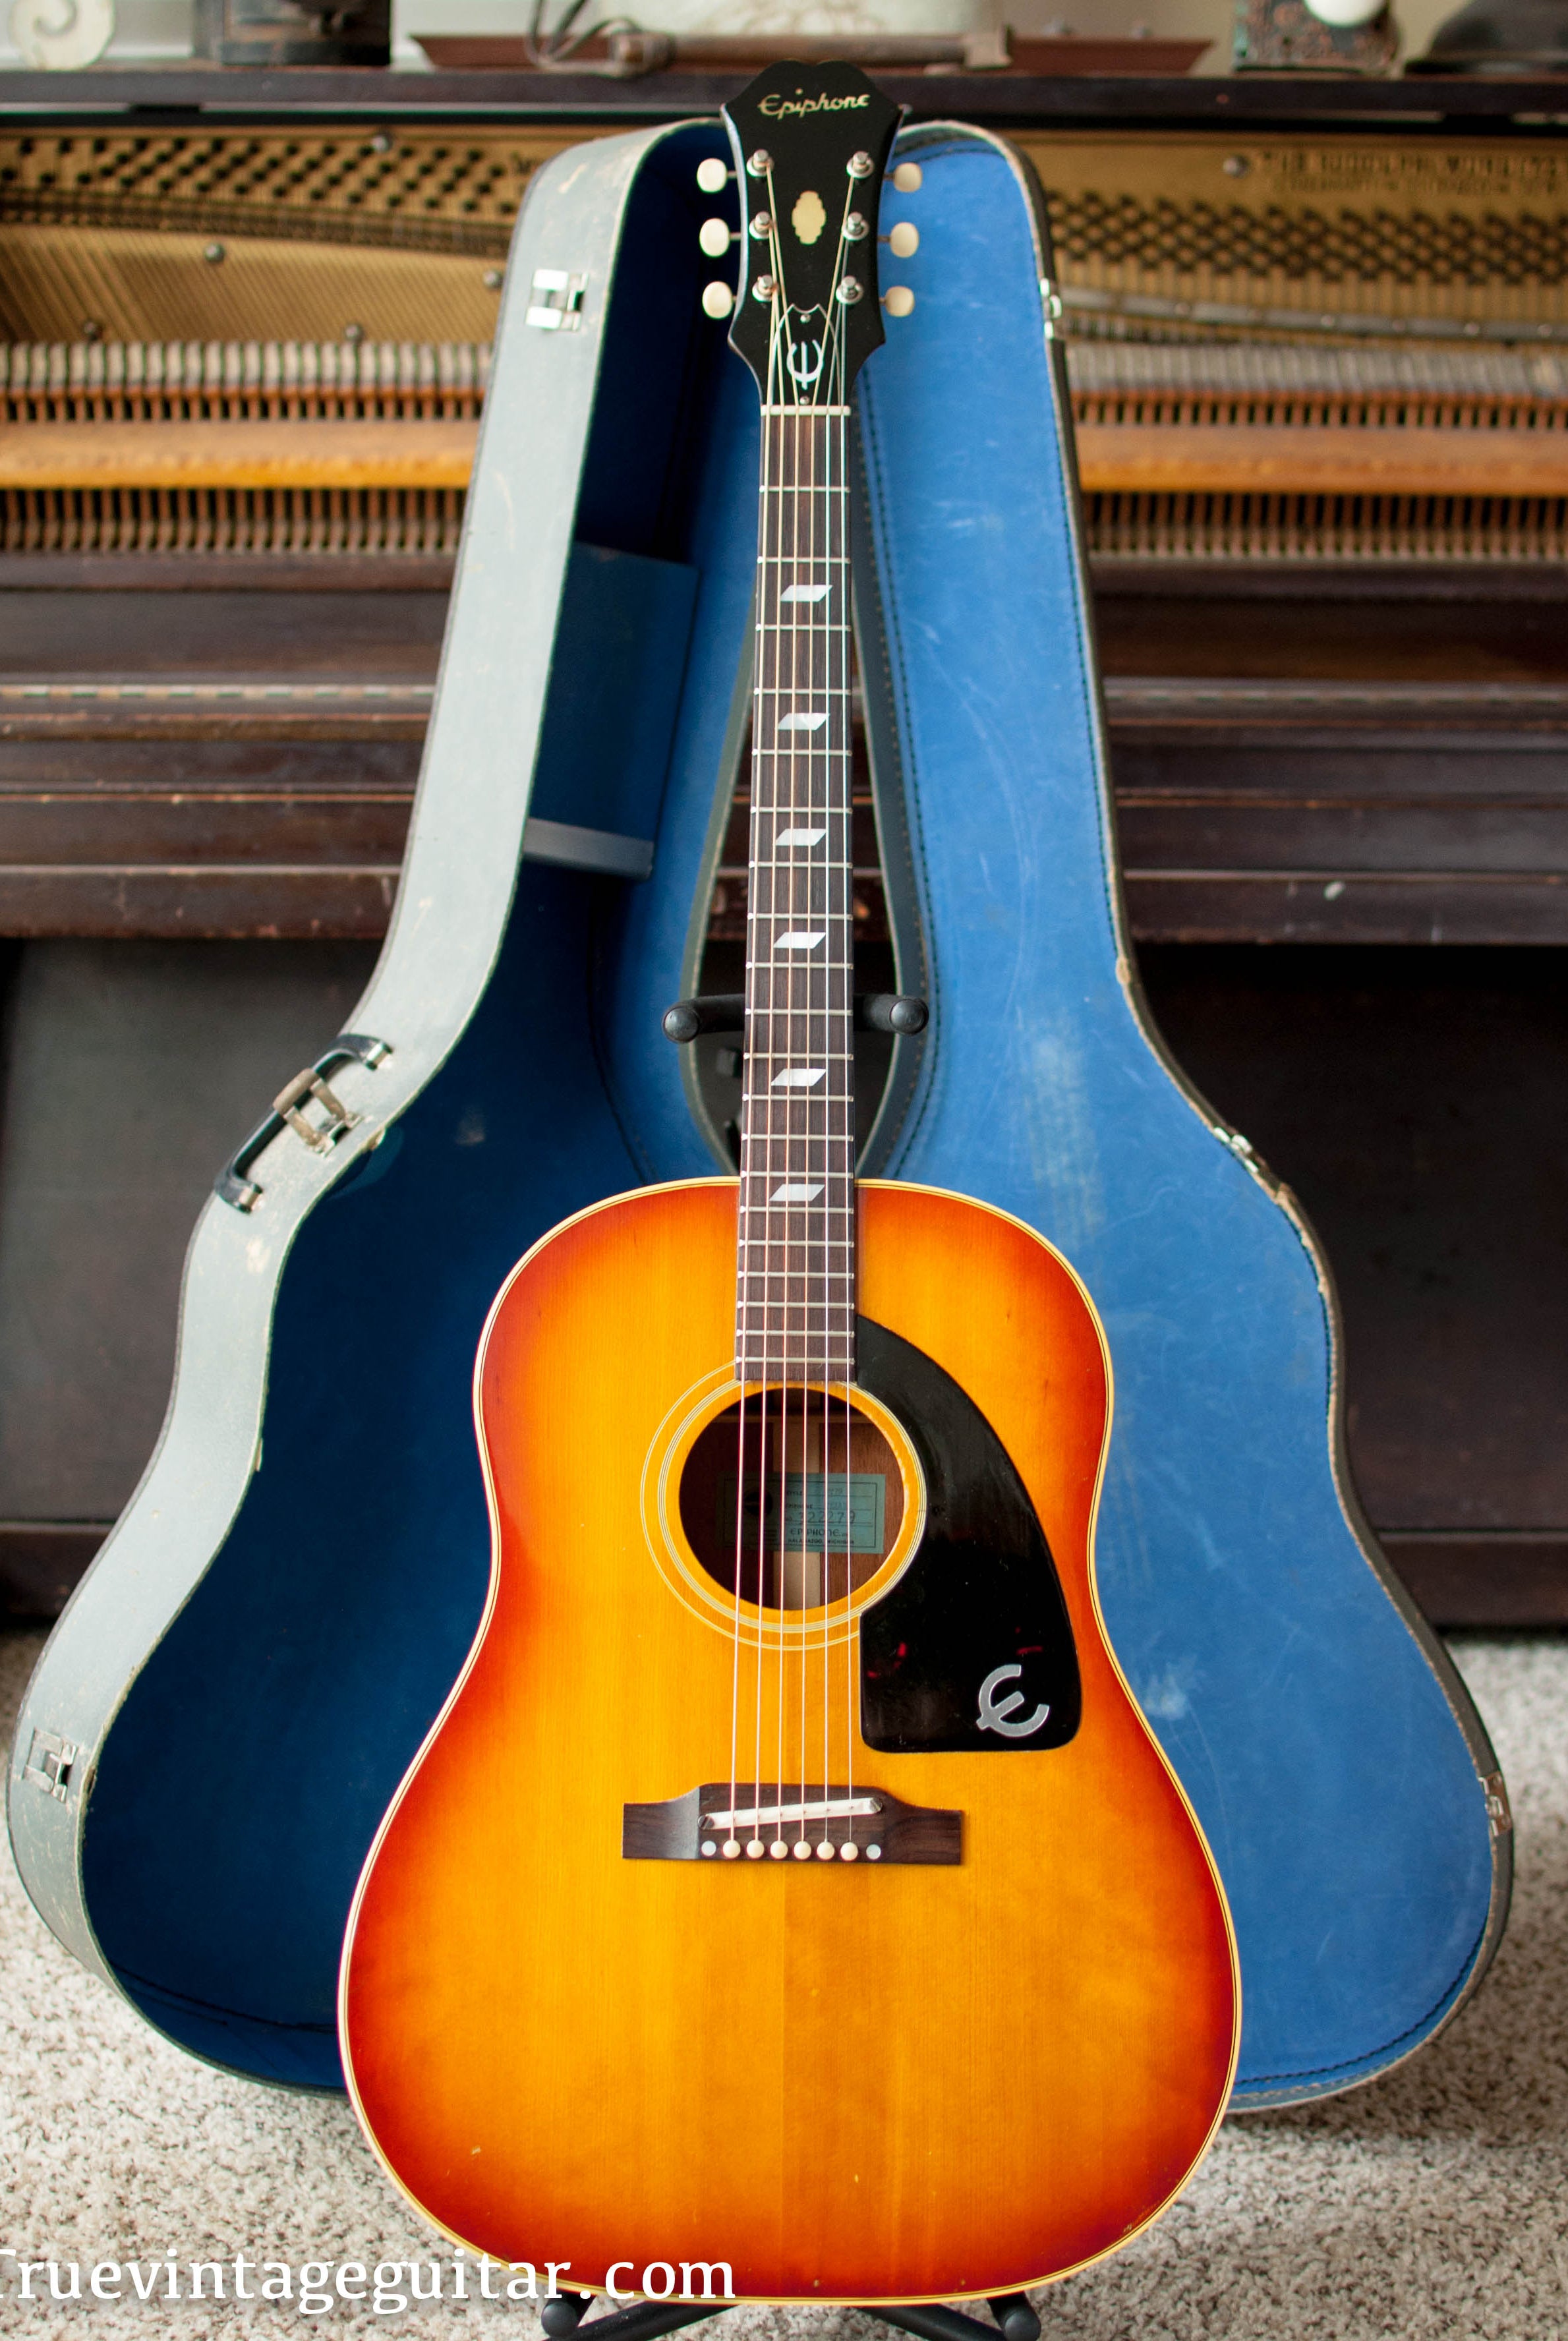 Vintage 1965 Epiphone FT-79 Texan acoustic guitar